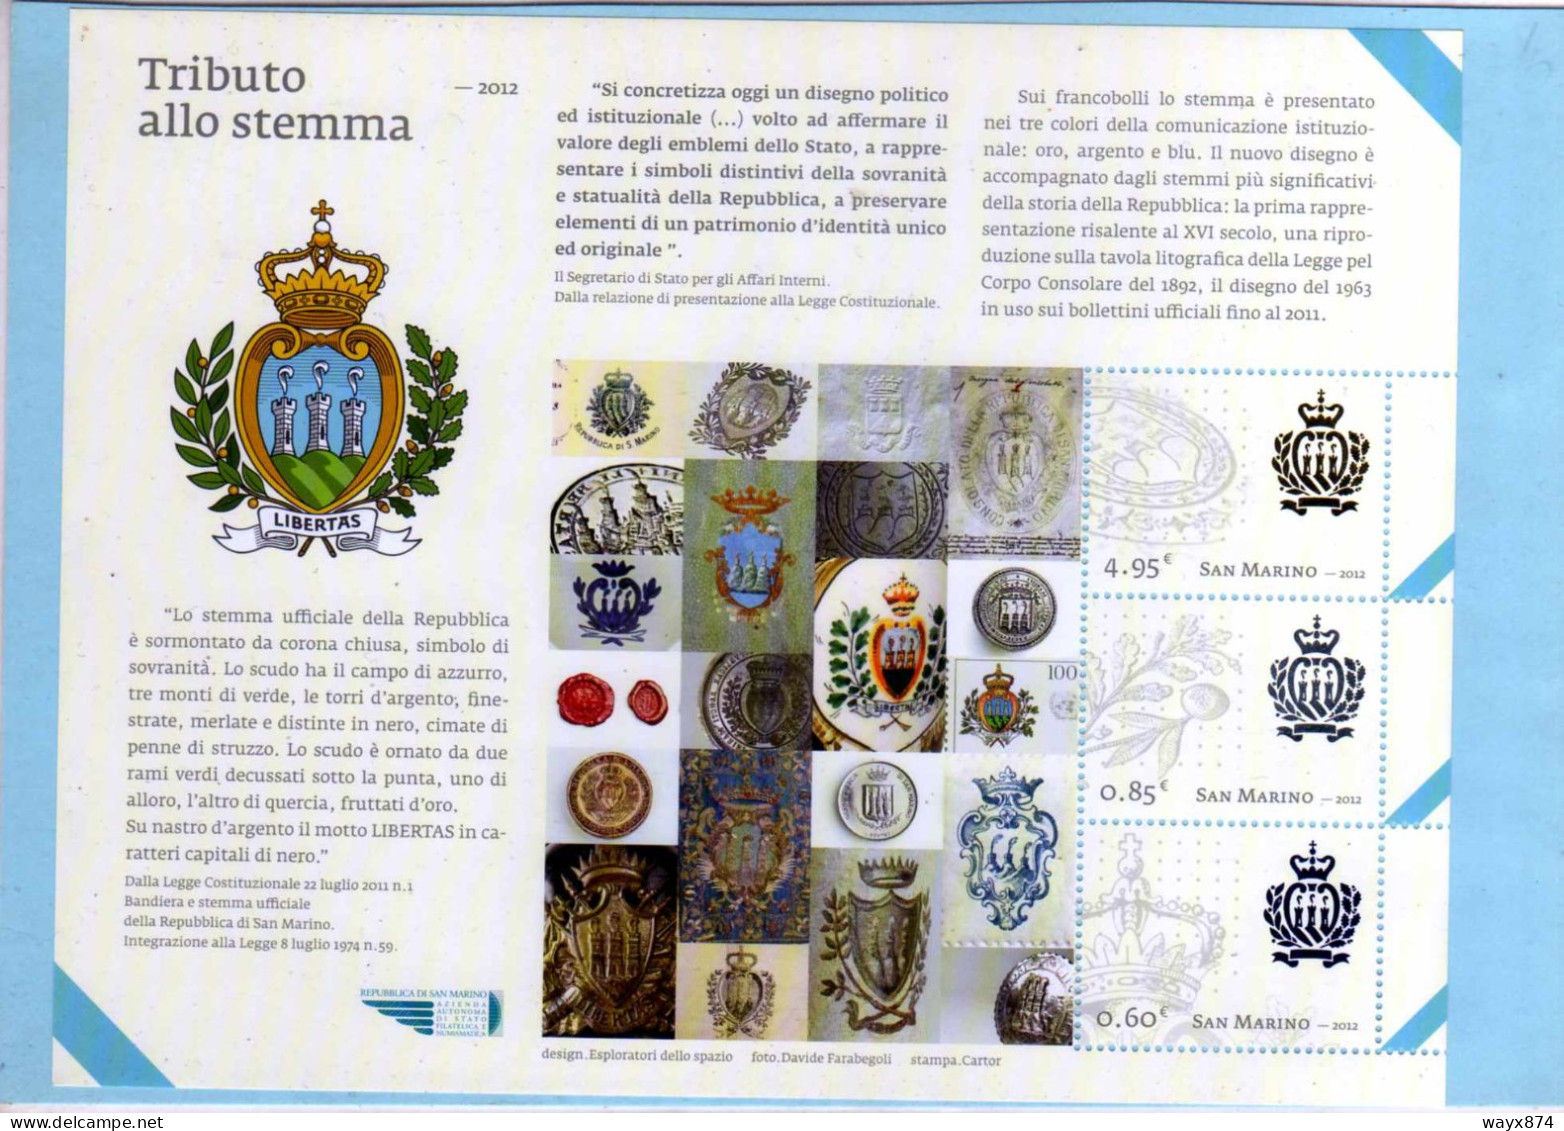 SAN MARINO 2012-TRIBUTO ALLO STEMMA-FOGLIETTO NUOVO-BF 117 - Unused Stamps